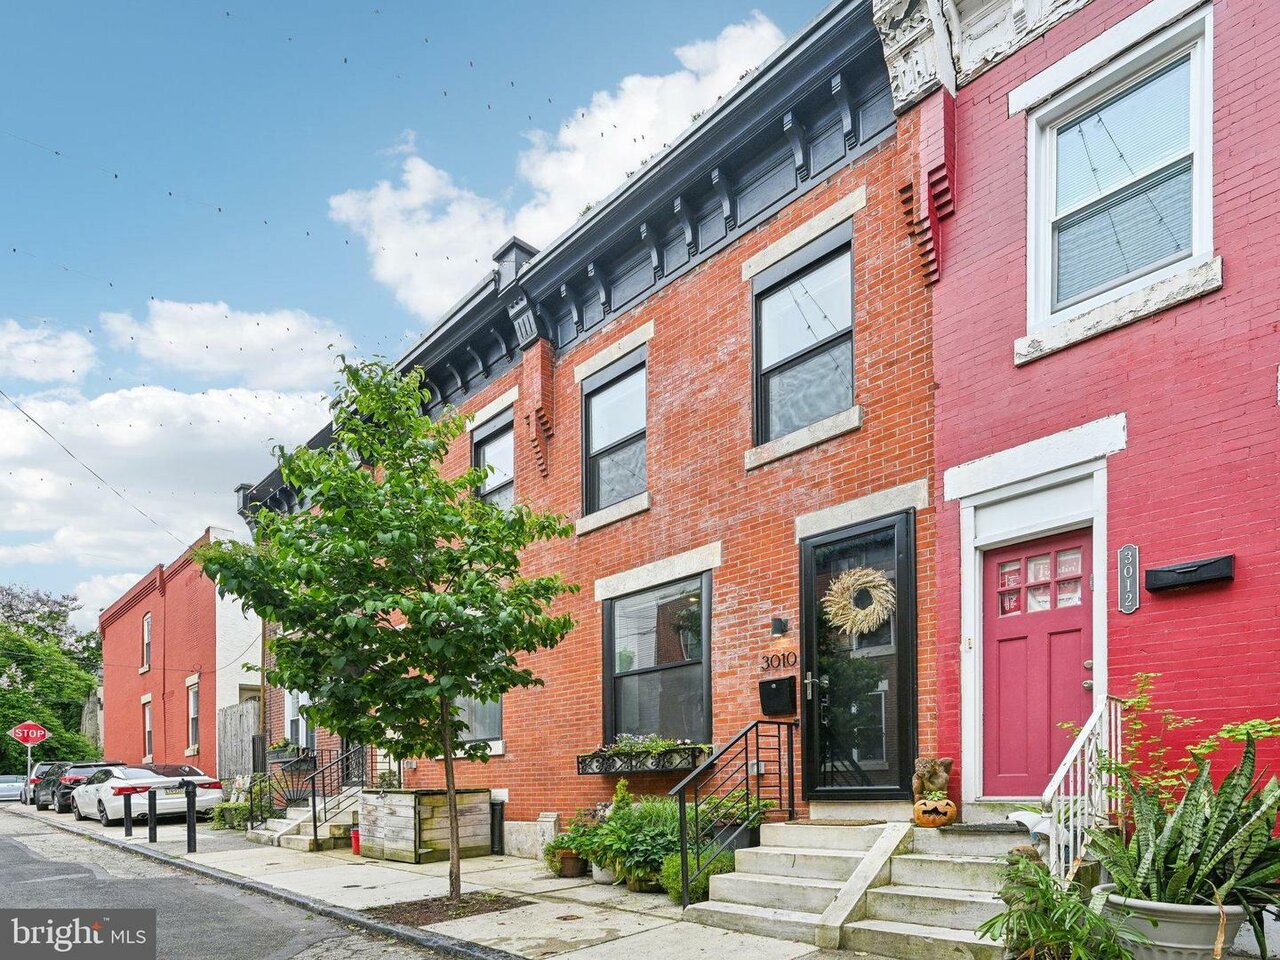 Beautiful Philadelphia neighborhood suitable for new homeowners.